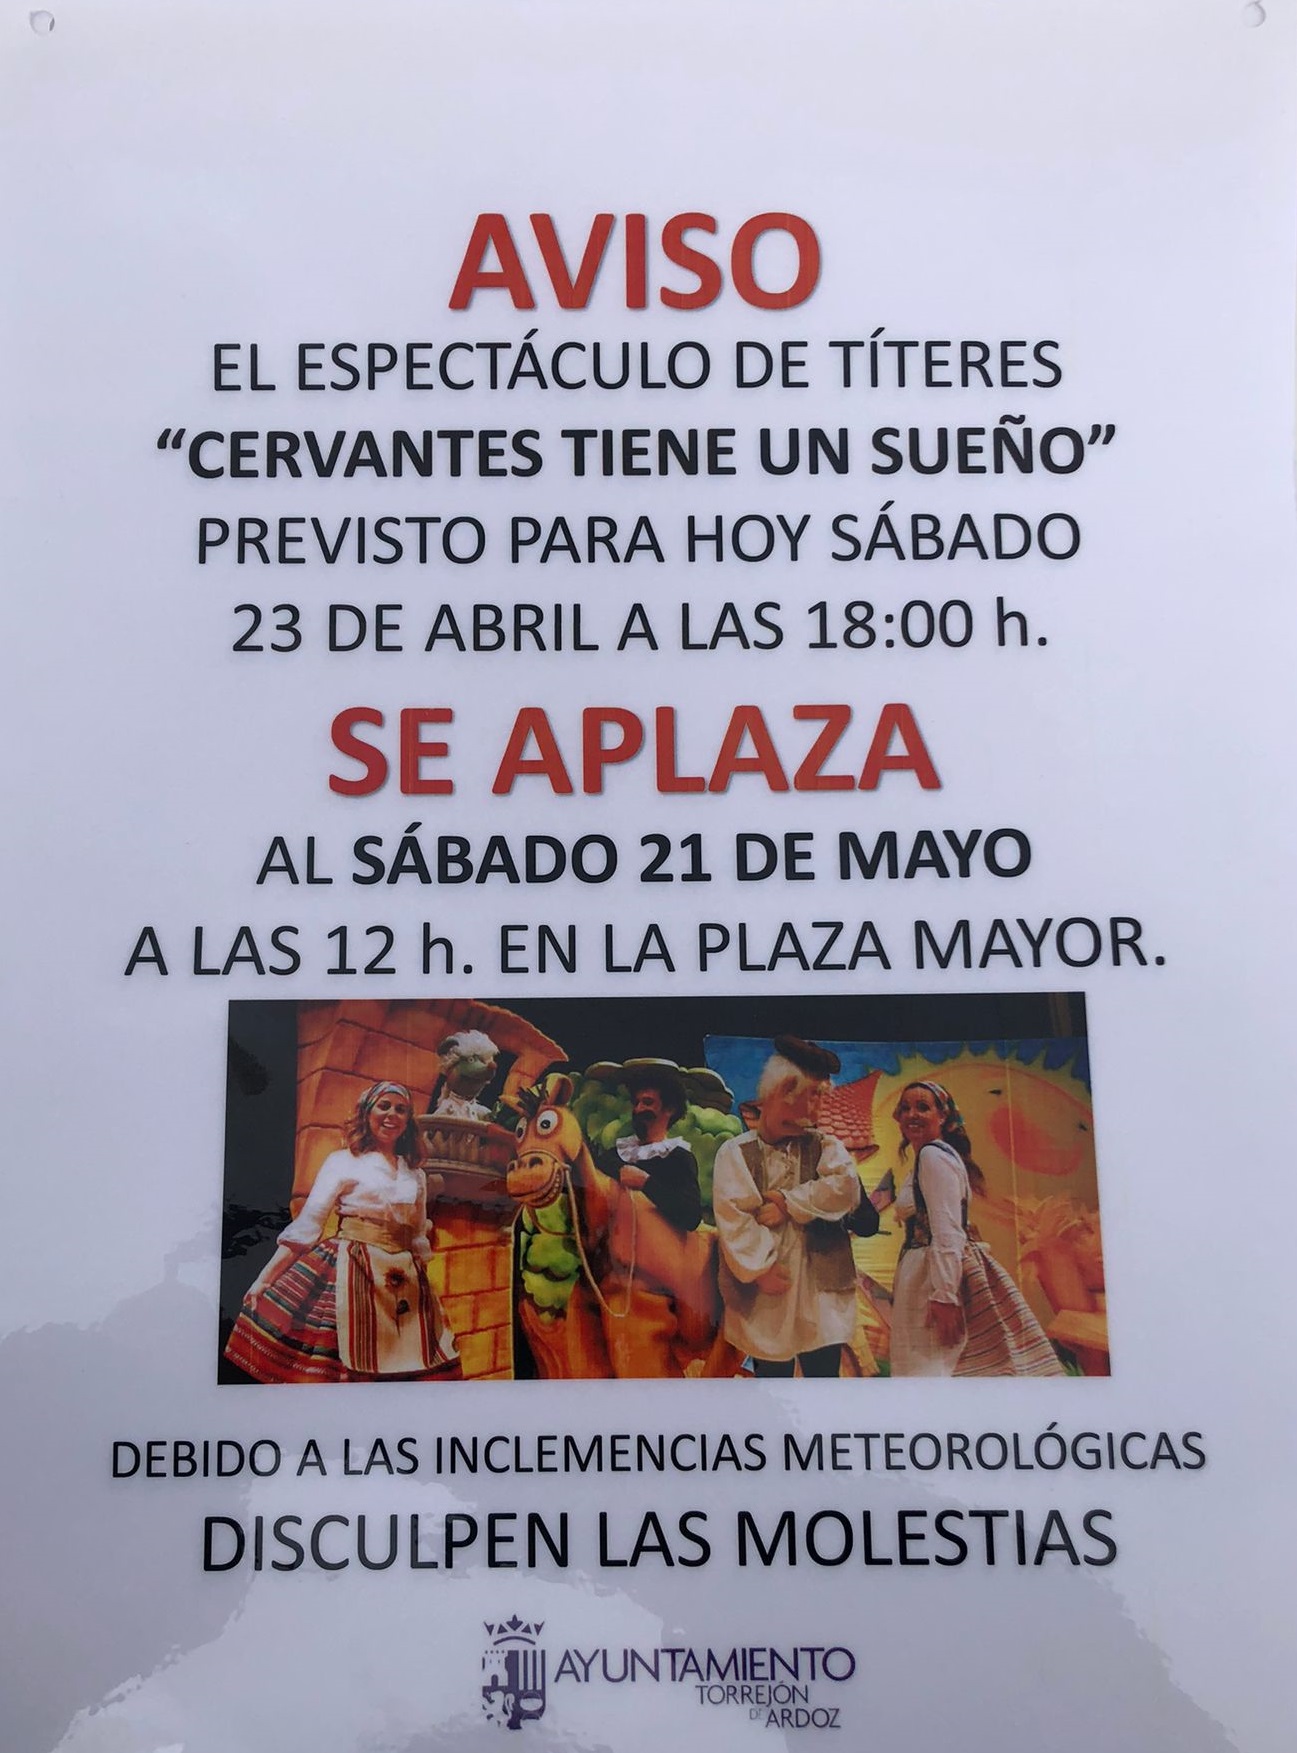 AVISO: El espectáculo de títeres previsto para esta tarde a las 18:00 horas en la Plaza Mayor se ha aplazado al 21 de mayo debido a las condiciones climatológicas adversas previstas para esta tarde